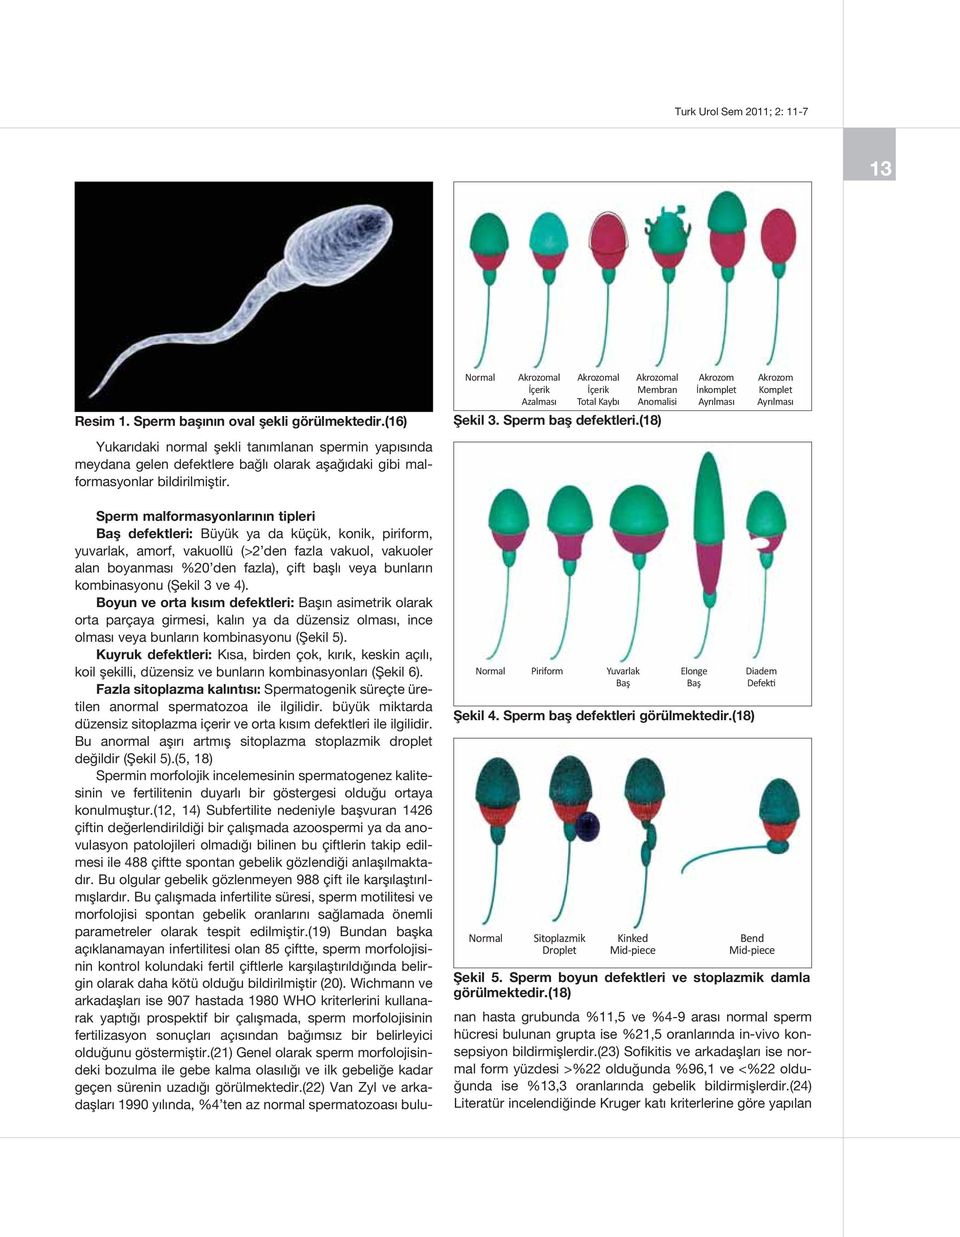 Normal Piriform Yuvarlak Elonge Şekil 4. Sperm baş defektleri görülmektedir.(18) Normal Sitoplazmik Droplet Kinked Mid-piece Diadem Defekti Bend Mid-piece Şekil 5.